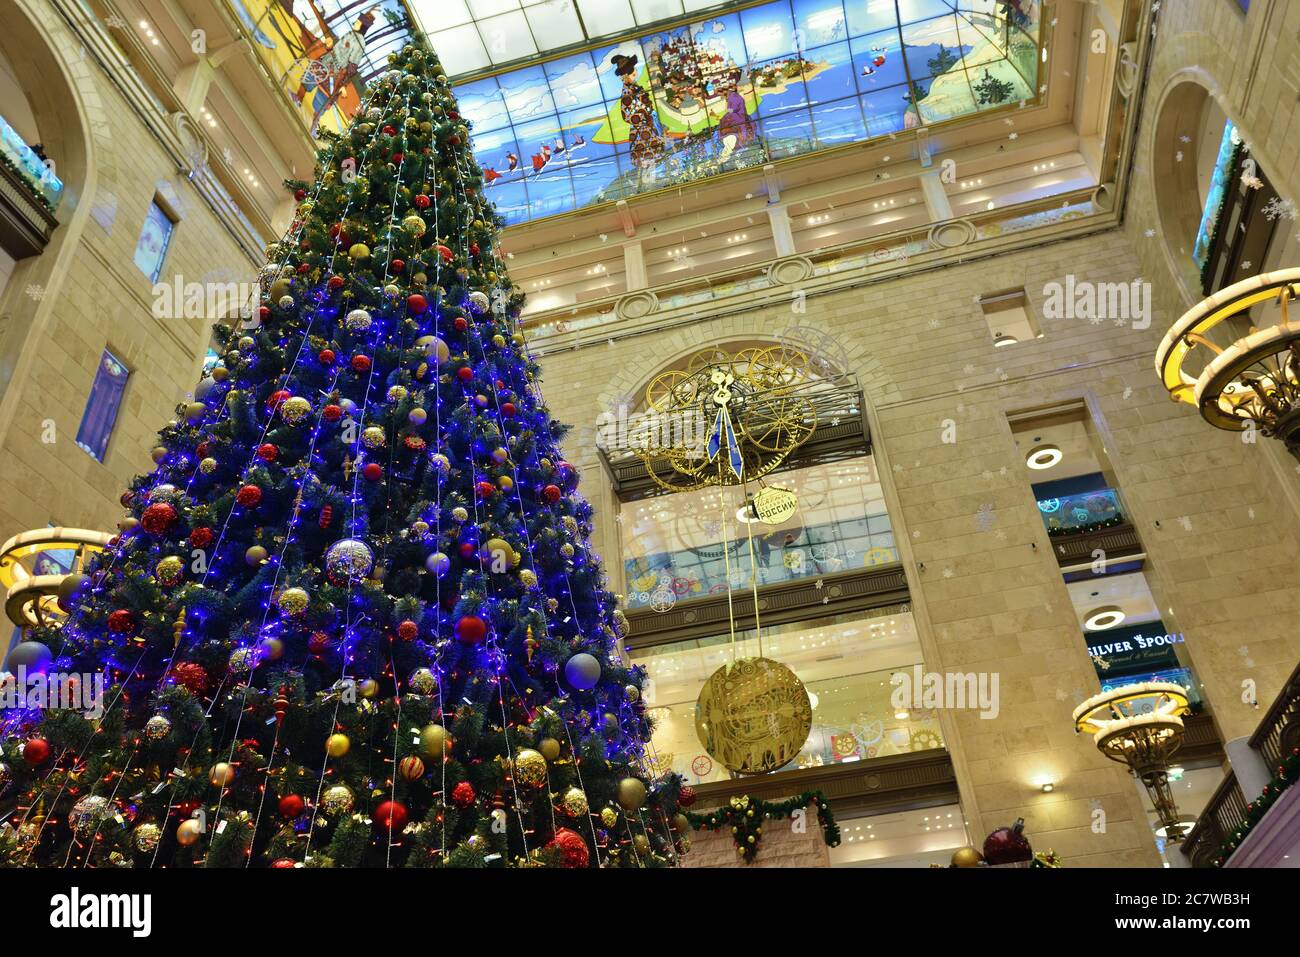 MOSKAU, RUSSLAND - 5. JAN 2016: Großer weihnachtsbaum und Innenräume des Hauptkinderhandels am Vorabend von Weihnachten und Neujahr, whic Stockfoto